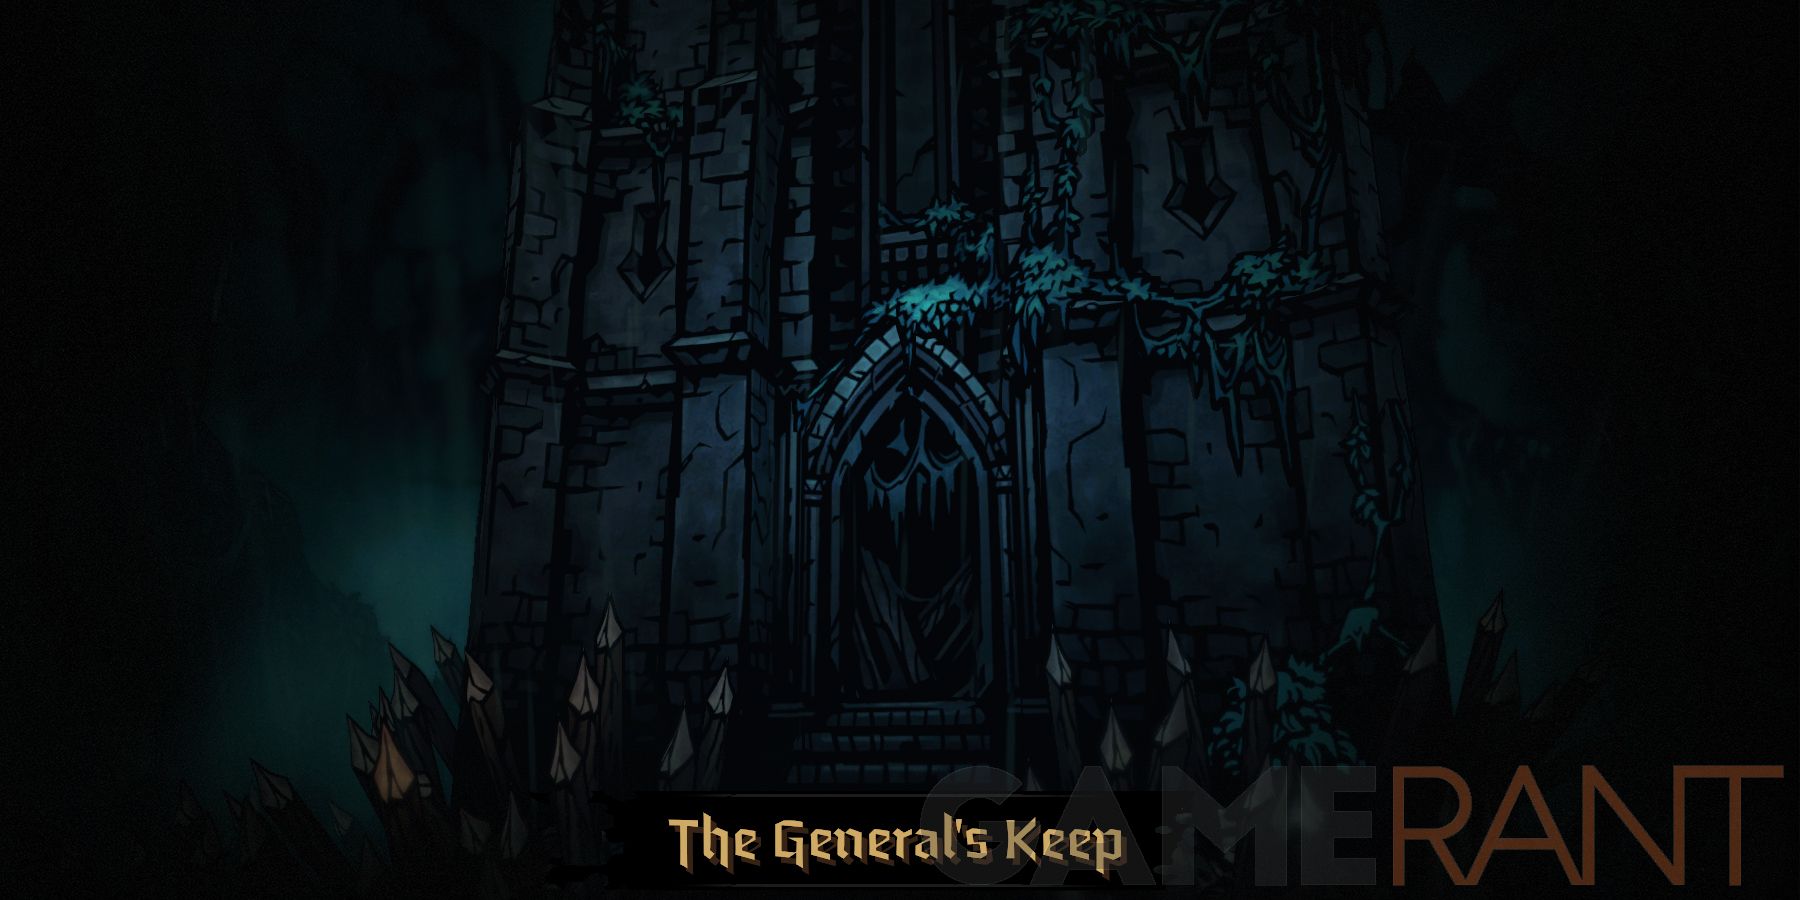 darkest dungeon final boss kills 2 soldier no matter what